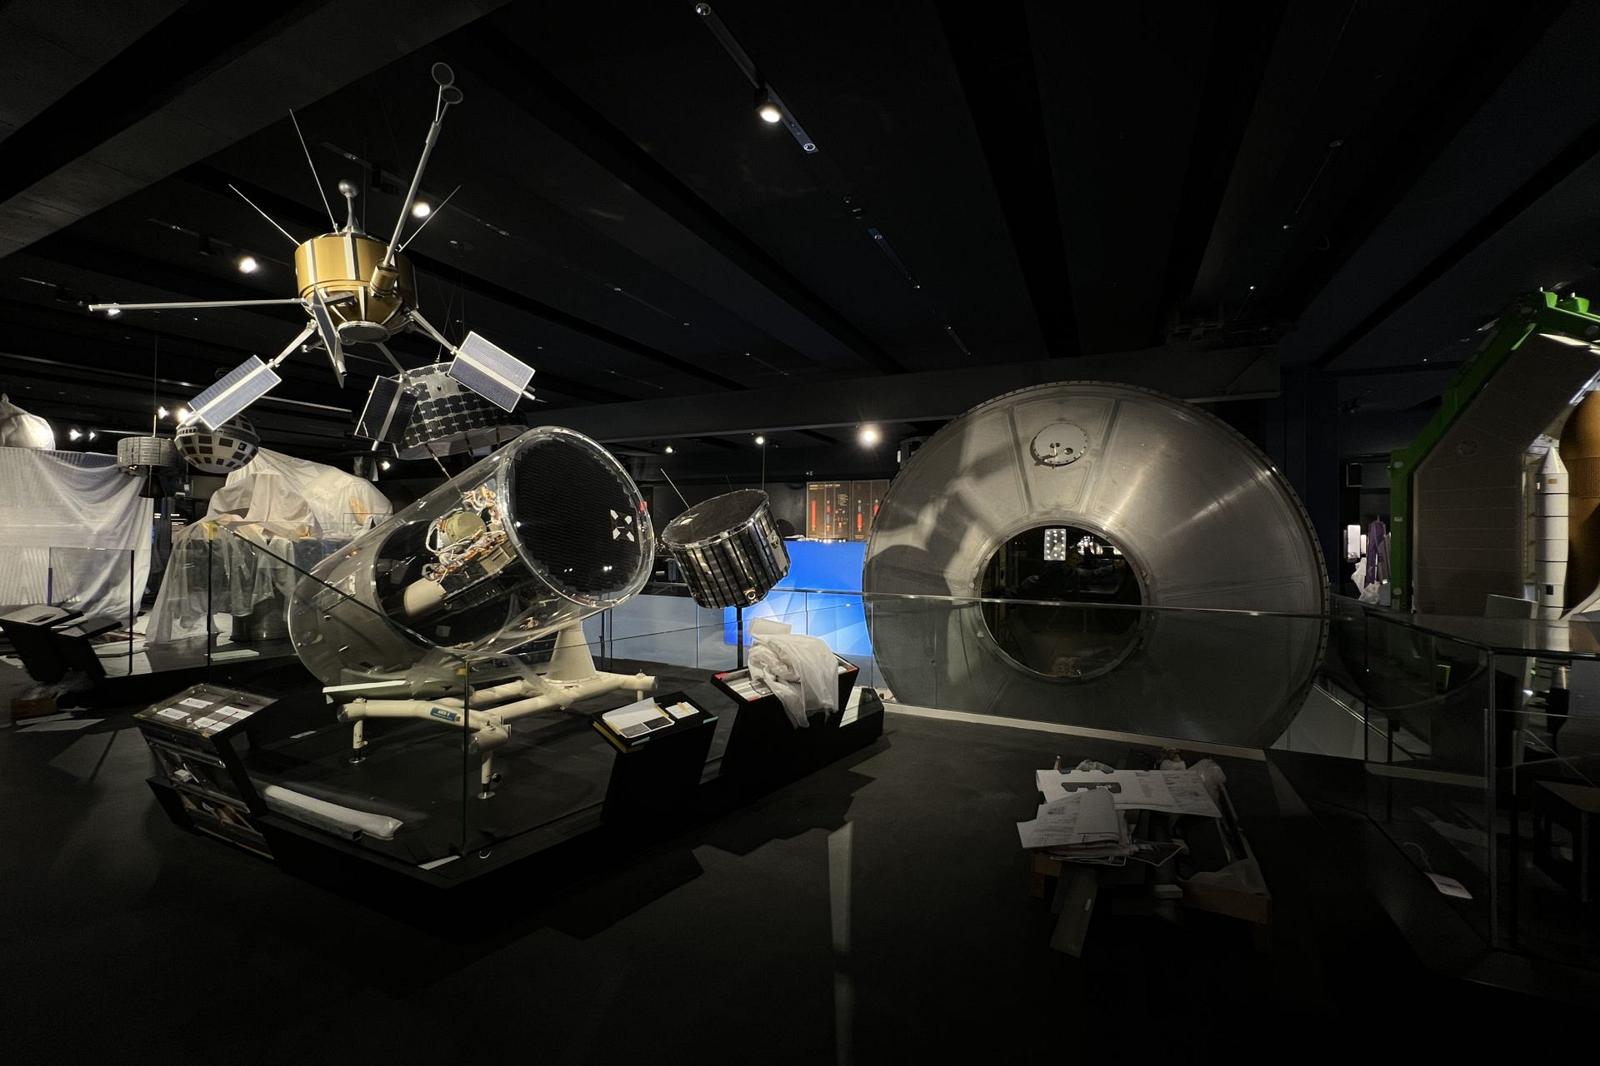 Einleuchten im Deutschen Museum München - Ausstellung - Raumfahrt